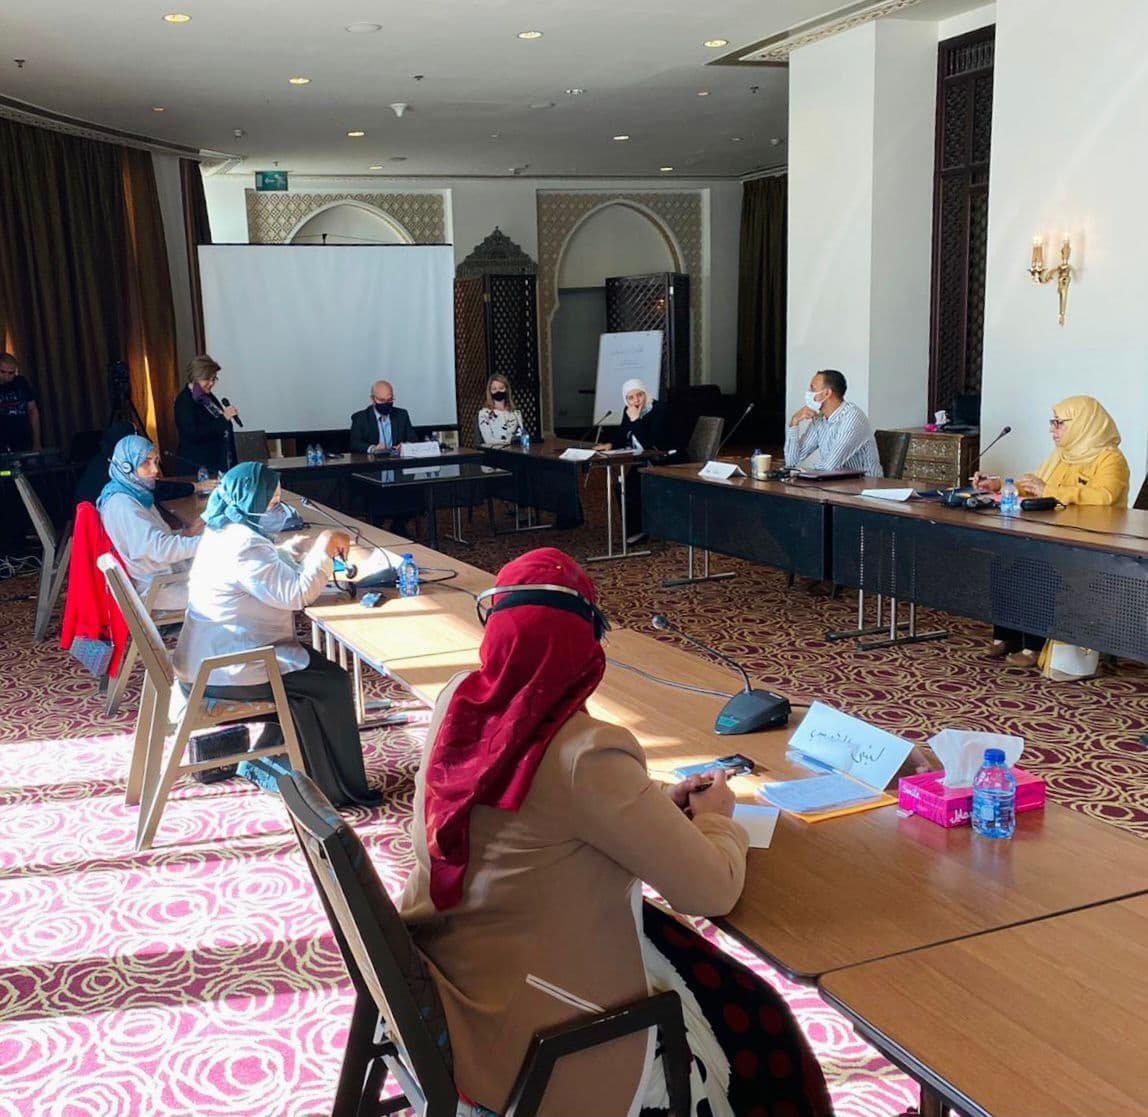 مكتب المبعوث الاممي يلتقي حزبيات يمنيات في عمان من اجل ايجاد آليات تعزز من مشاركة المرأة في العملية التفاوضية وبناء السلام